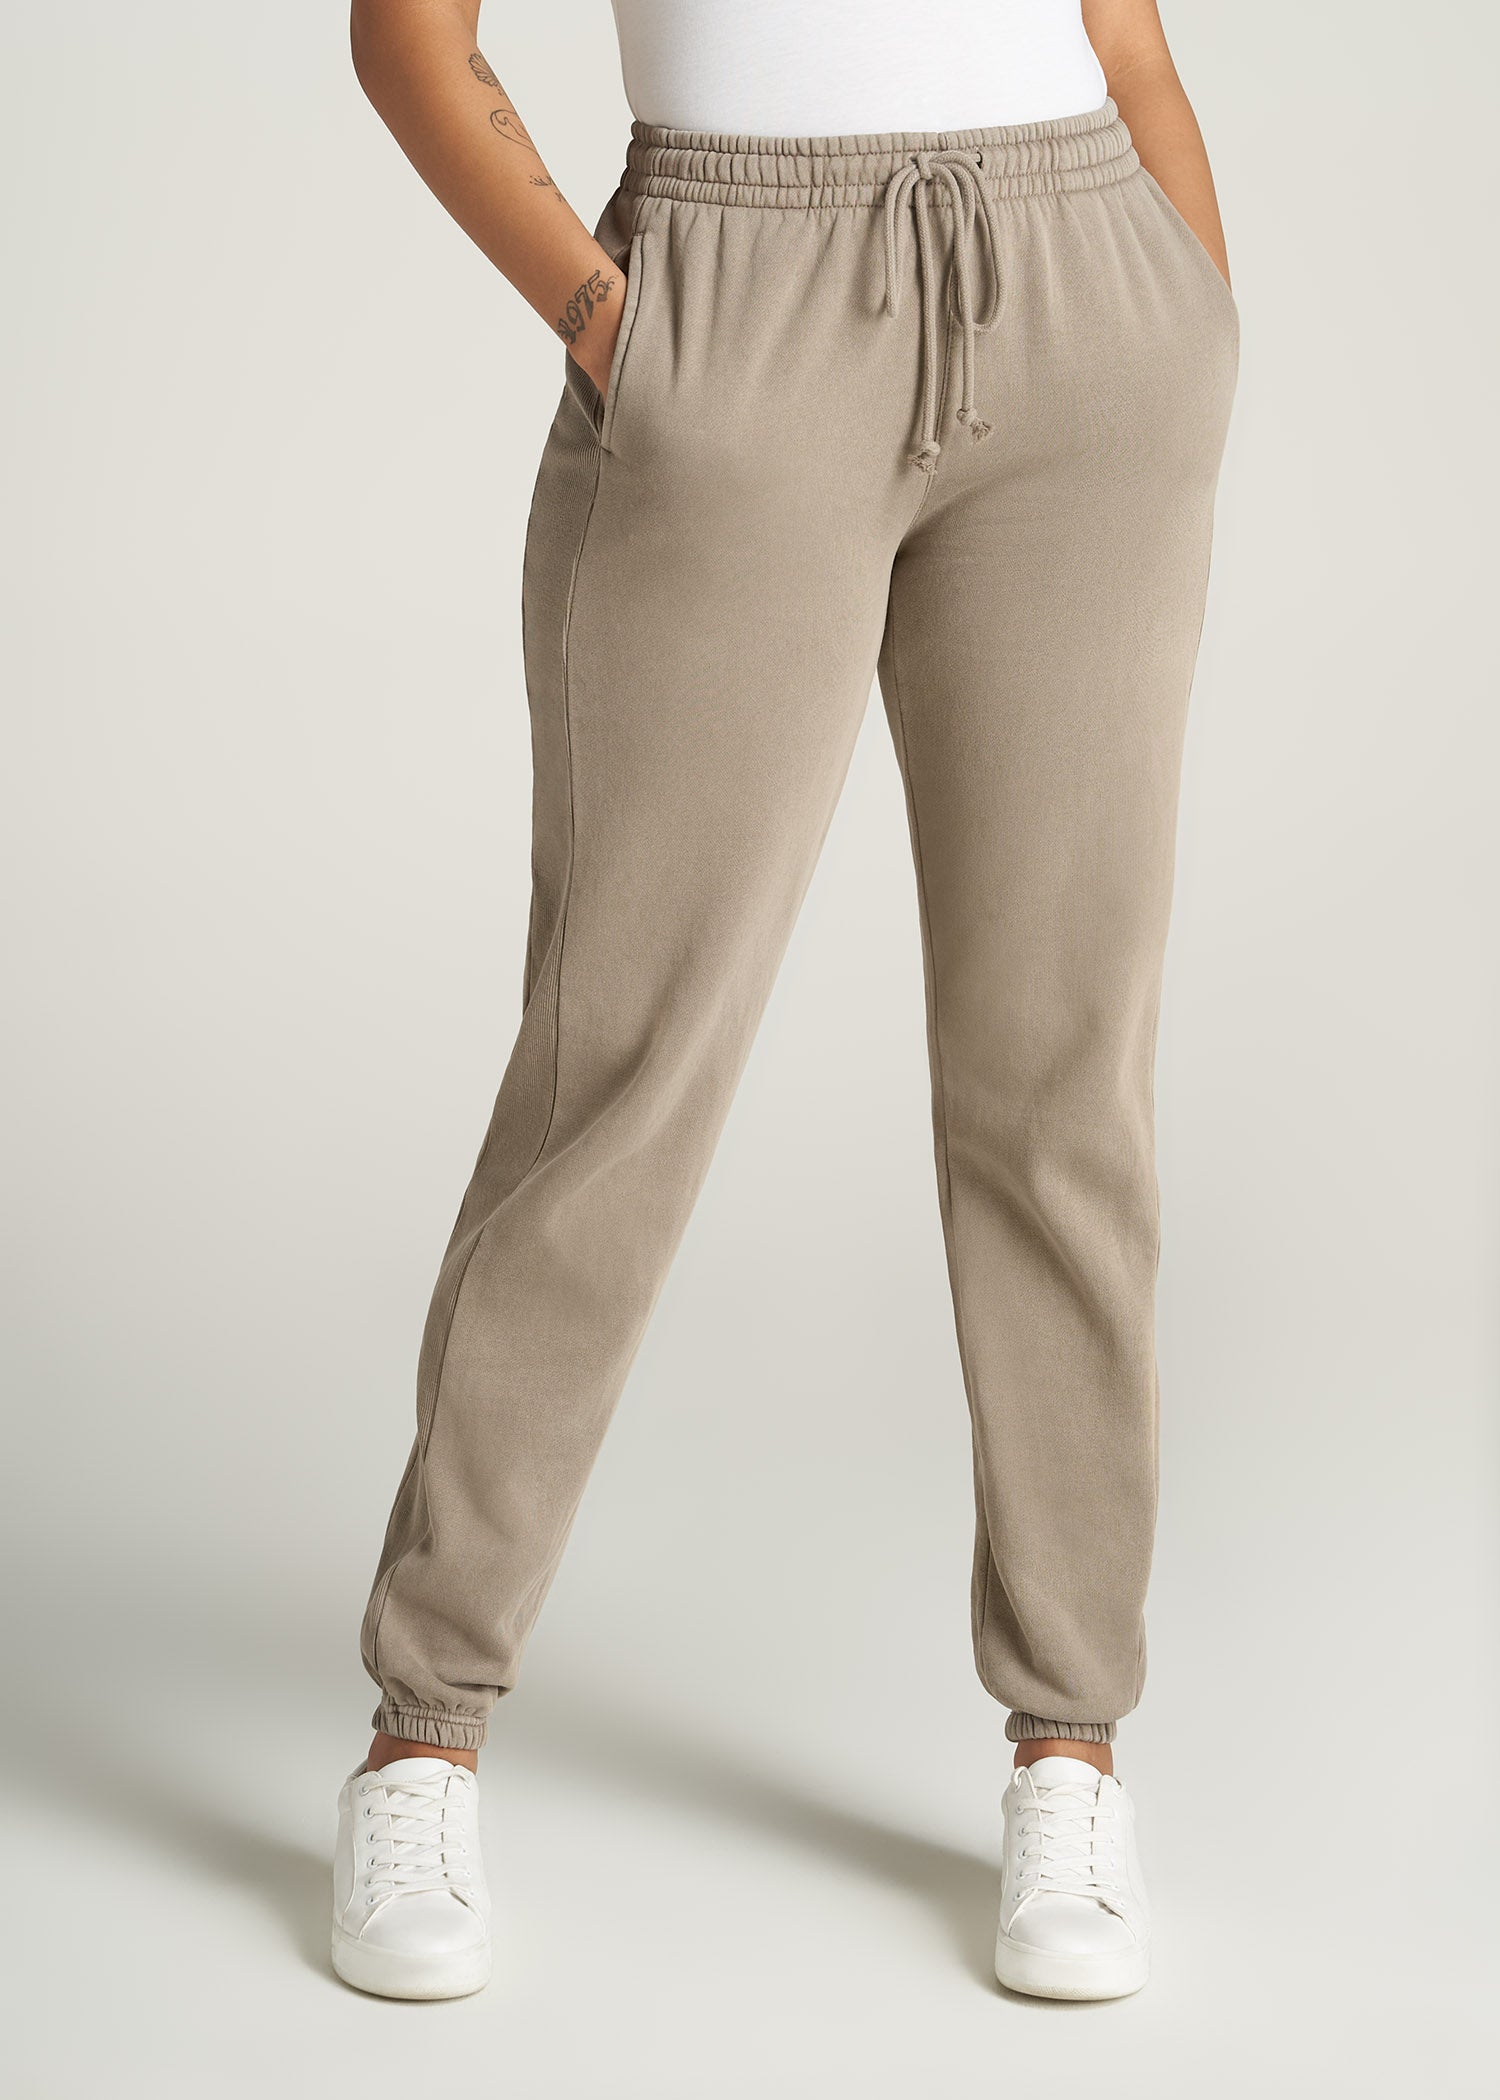 Wearever Fleece Regular Fit Women's Tall Sweatpants in Khaki